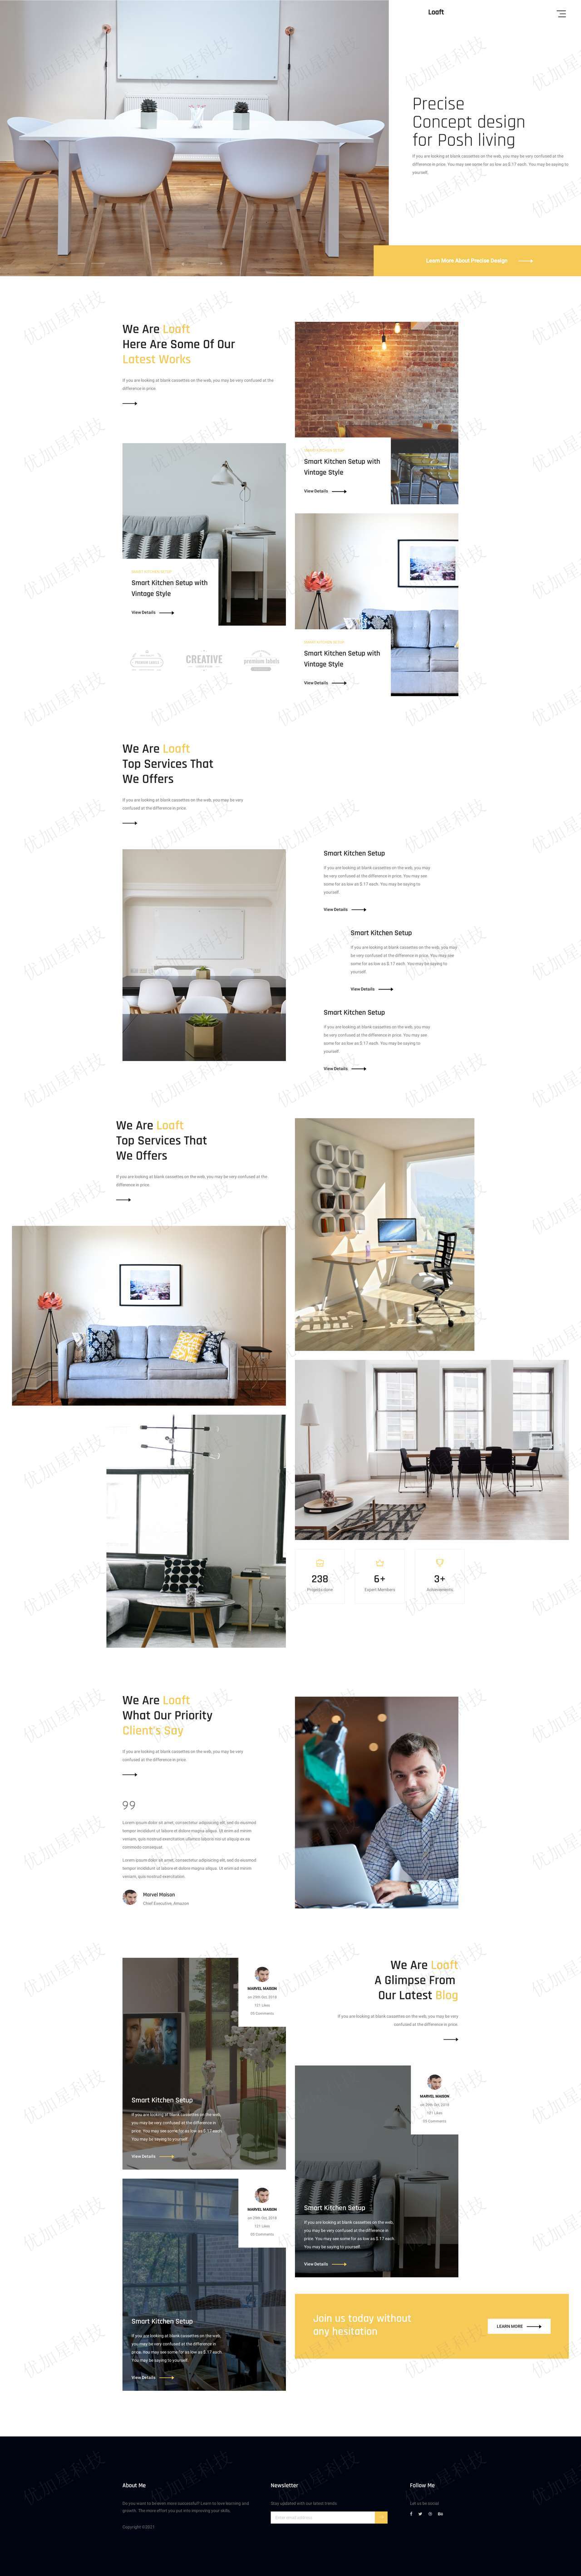 豪华室内装潢概念设计响应式企业网站模板_优加星网络科技